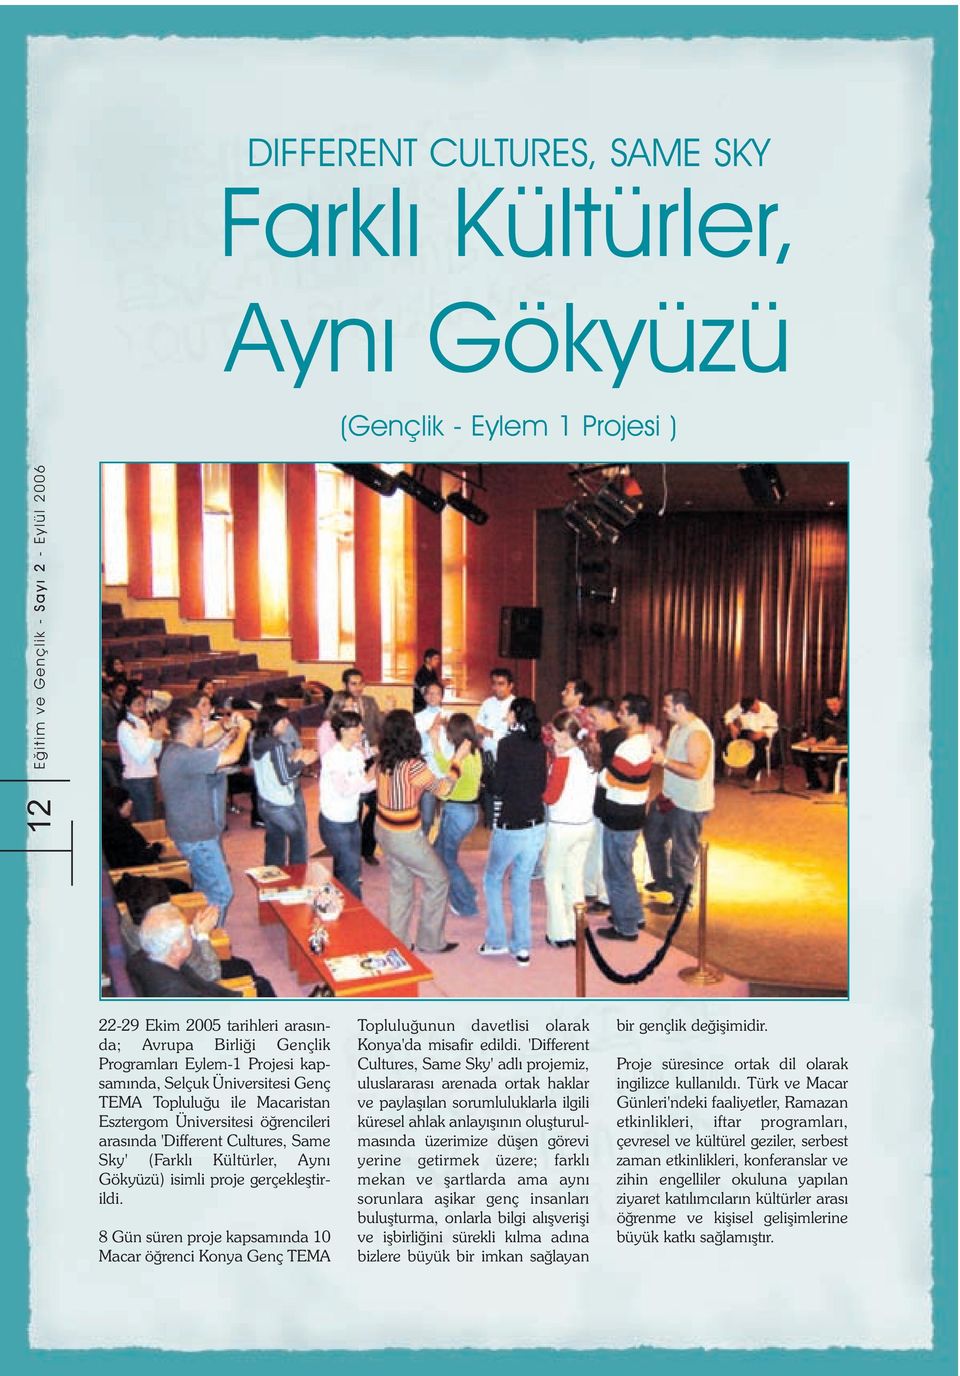 8 Gün süren proje kapsamýnda 10 Macar öðrenci Konya Genç TEMA Topluluðunun davetlisi olarak Konya'da misafir edildi.